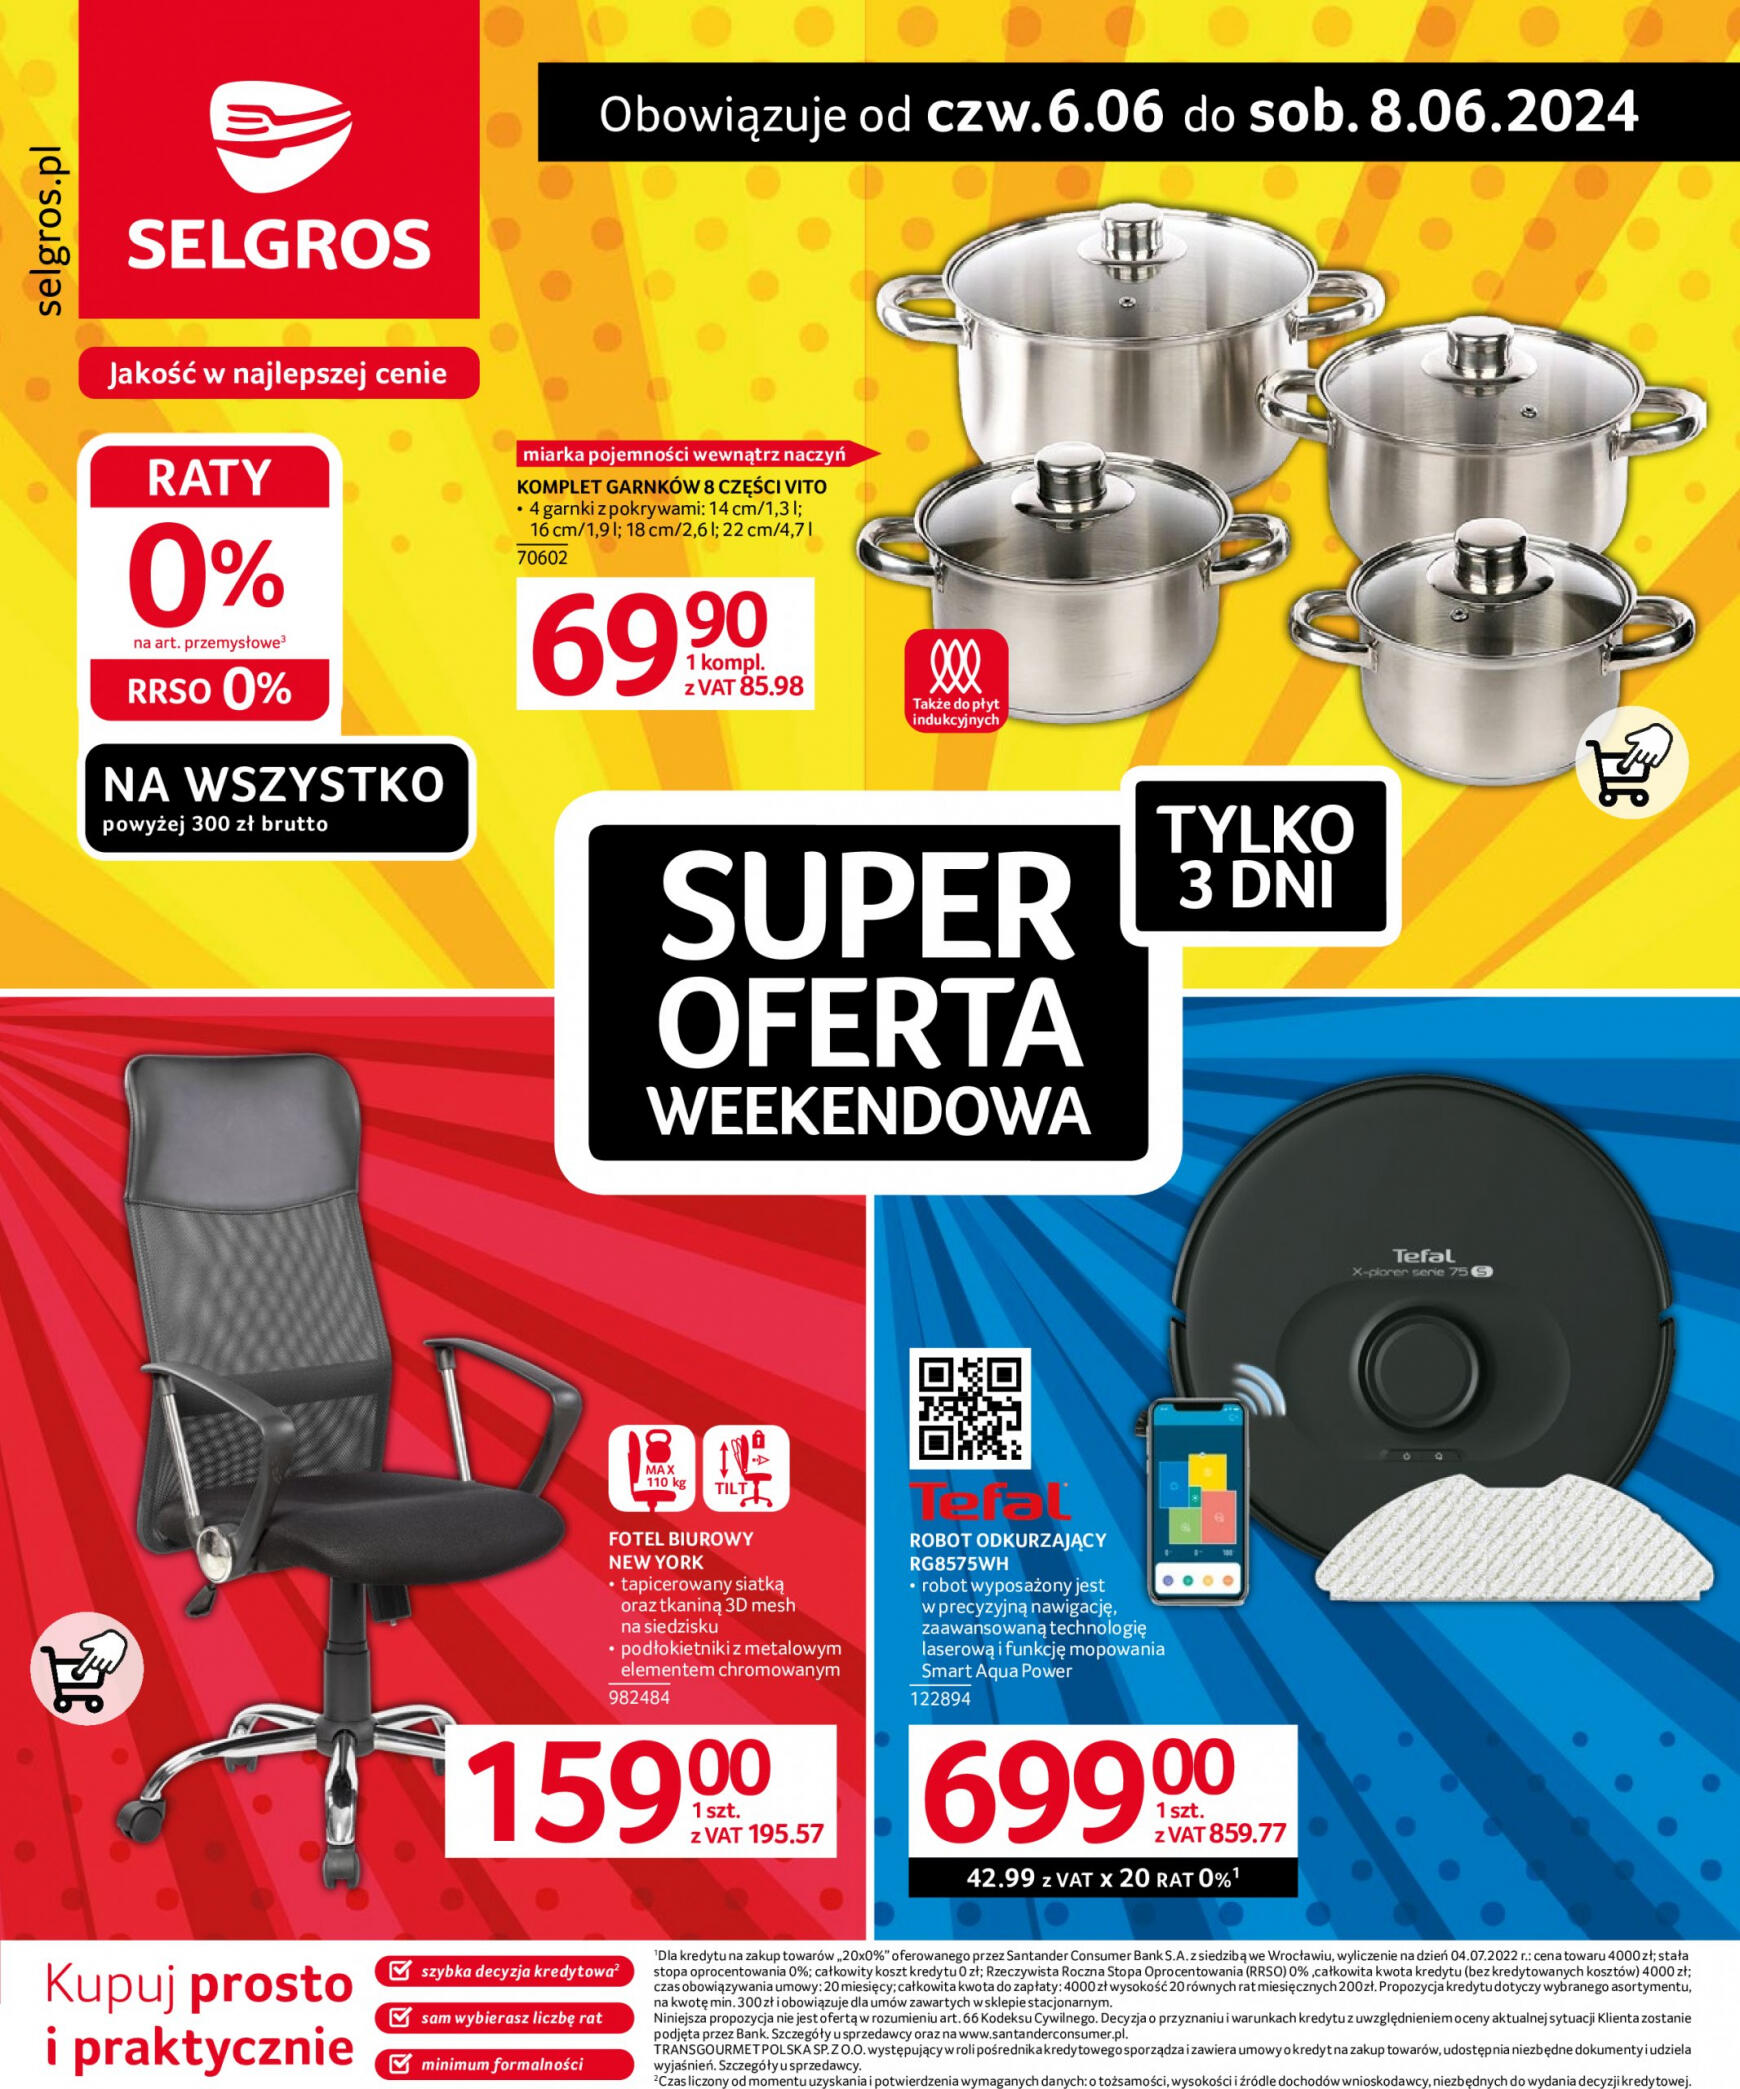 selgros - Selgros cash&carry - Super Oferta Weekendowa gazetka aktualna ważna od 06.06. - 08.06. - page: 1